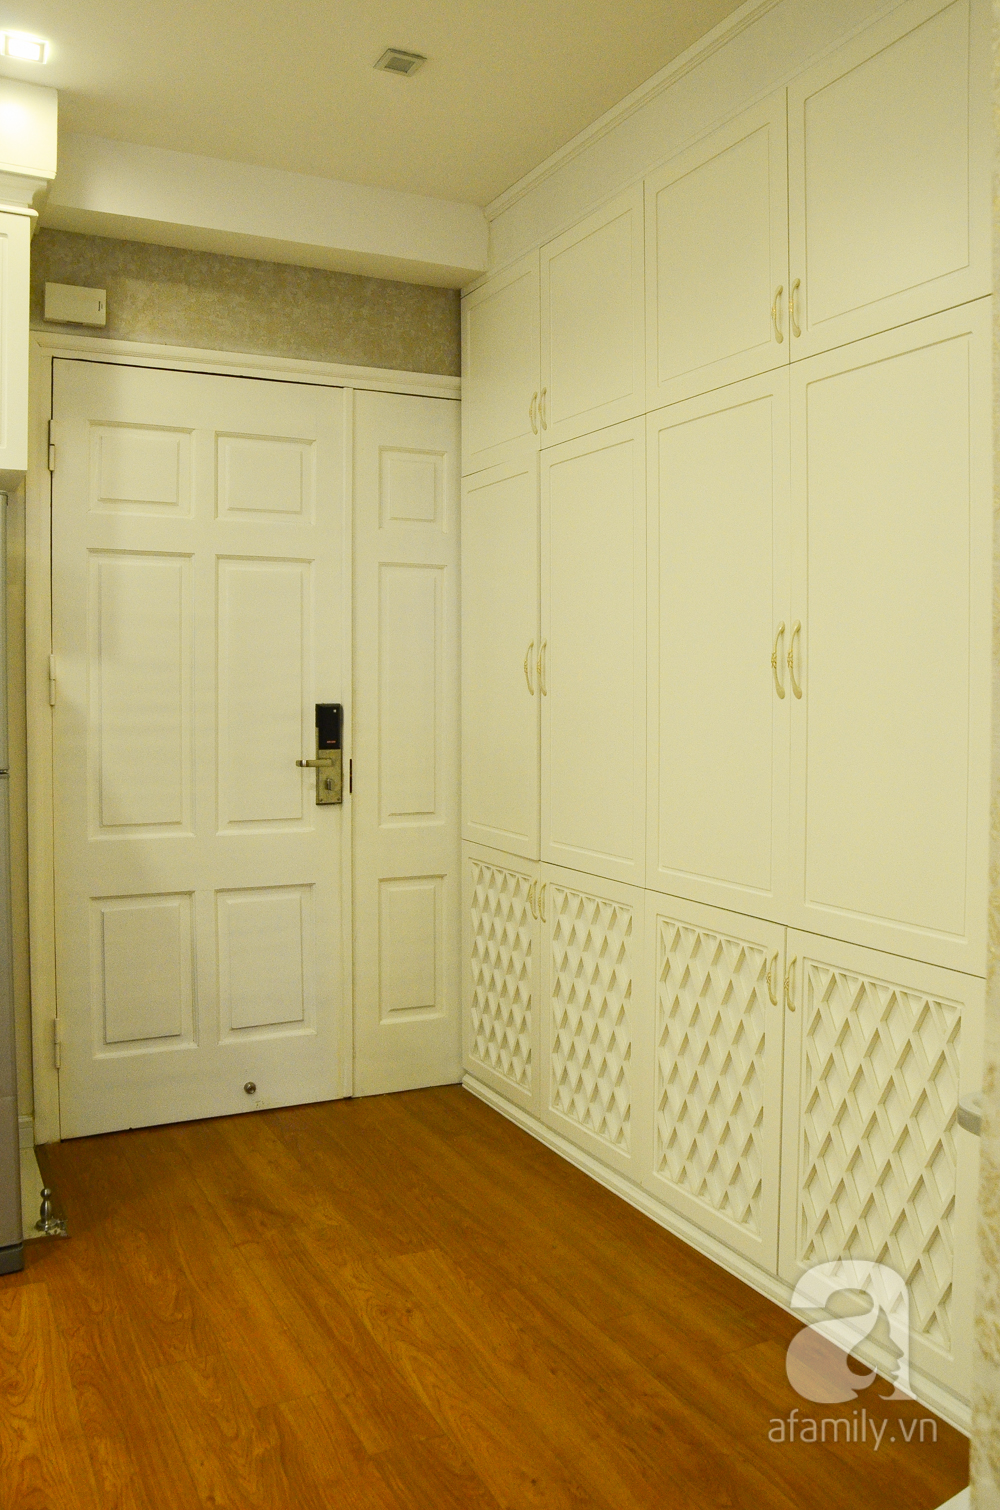 Cửa chính vào căn hộ khá rộng cùng tone màu với tủ giày trắng lớn cao sát trần, thiết kế hiện đại